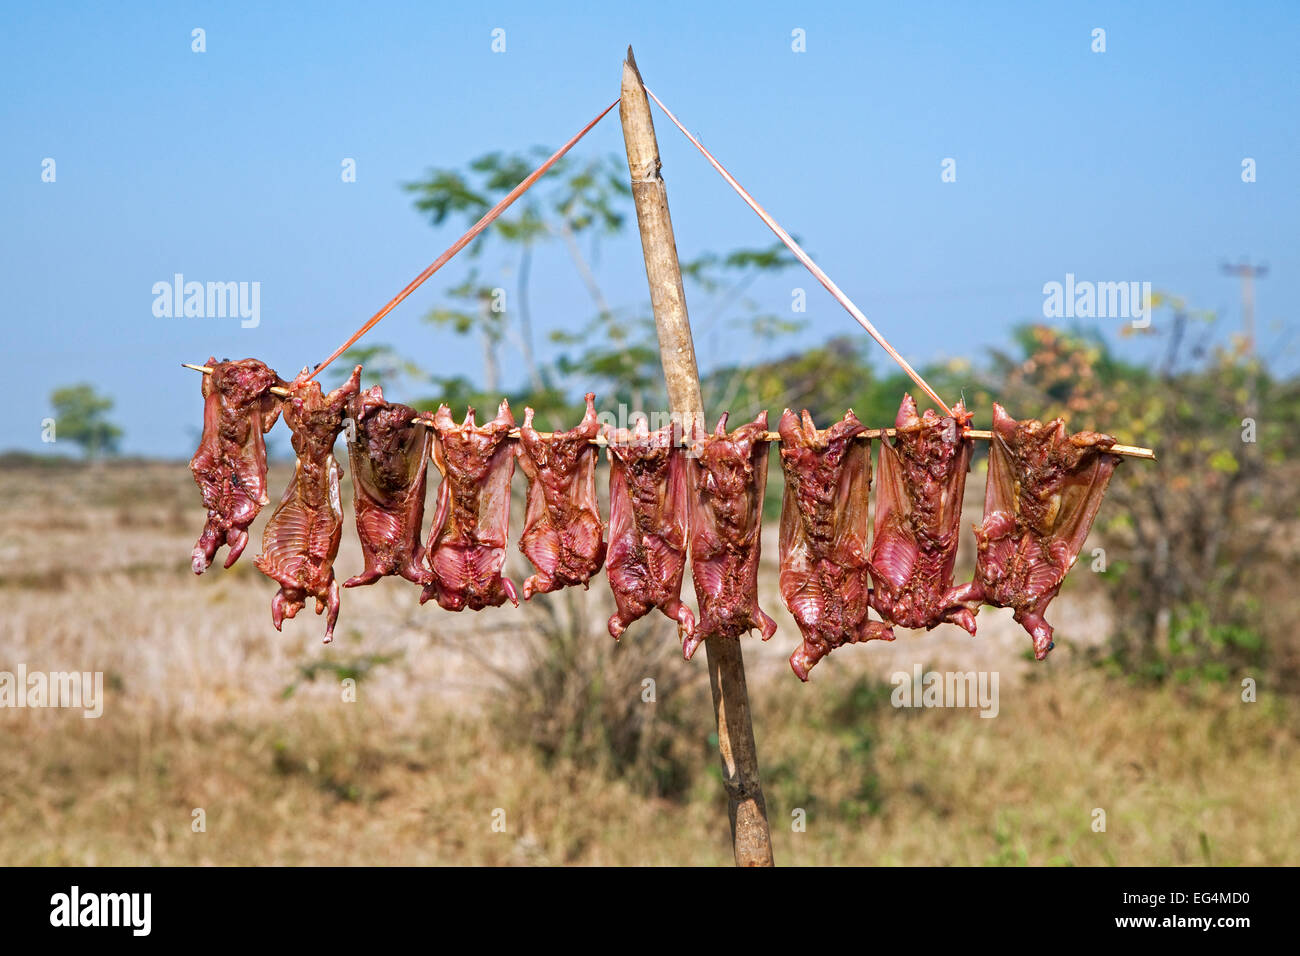 https://c8.alamy.com/compes/eg4md0/trague-los-cadaveres-de-secado-al-sol-pajaro-de-carne-utilizadas-como-alimento-en-la-cocina-local-region-de-yangon-myanmar-birmania-eg4md0.jpg